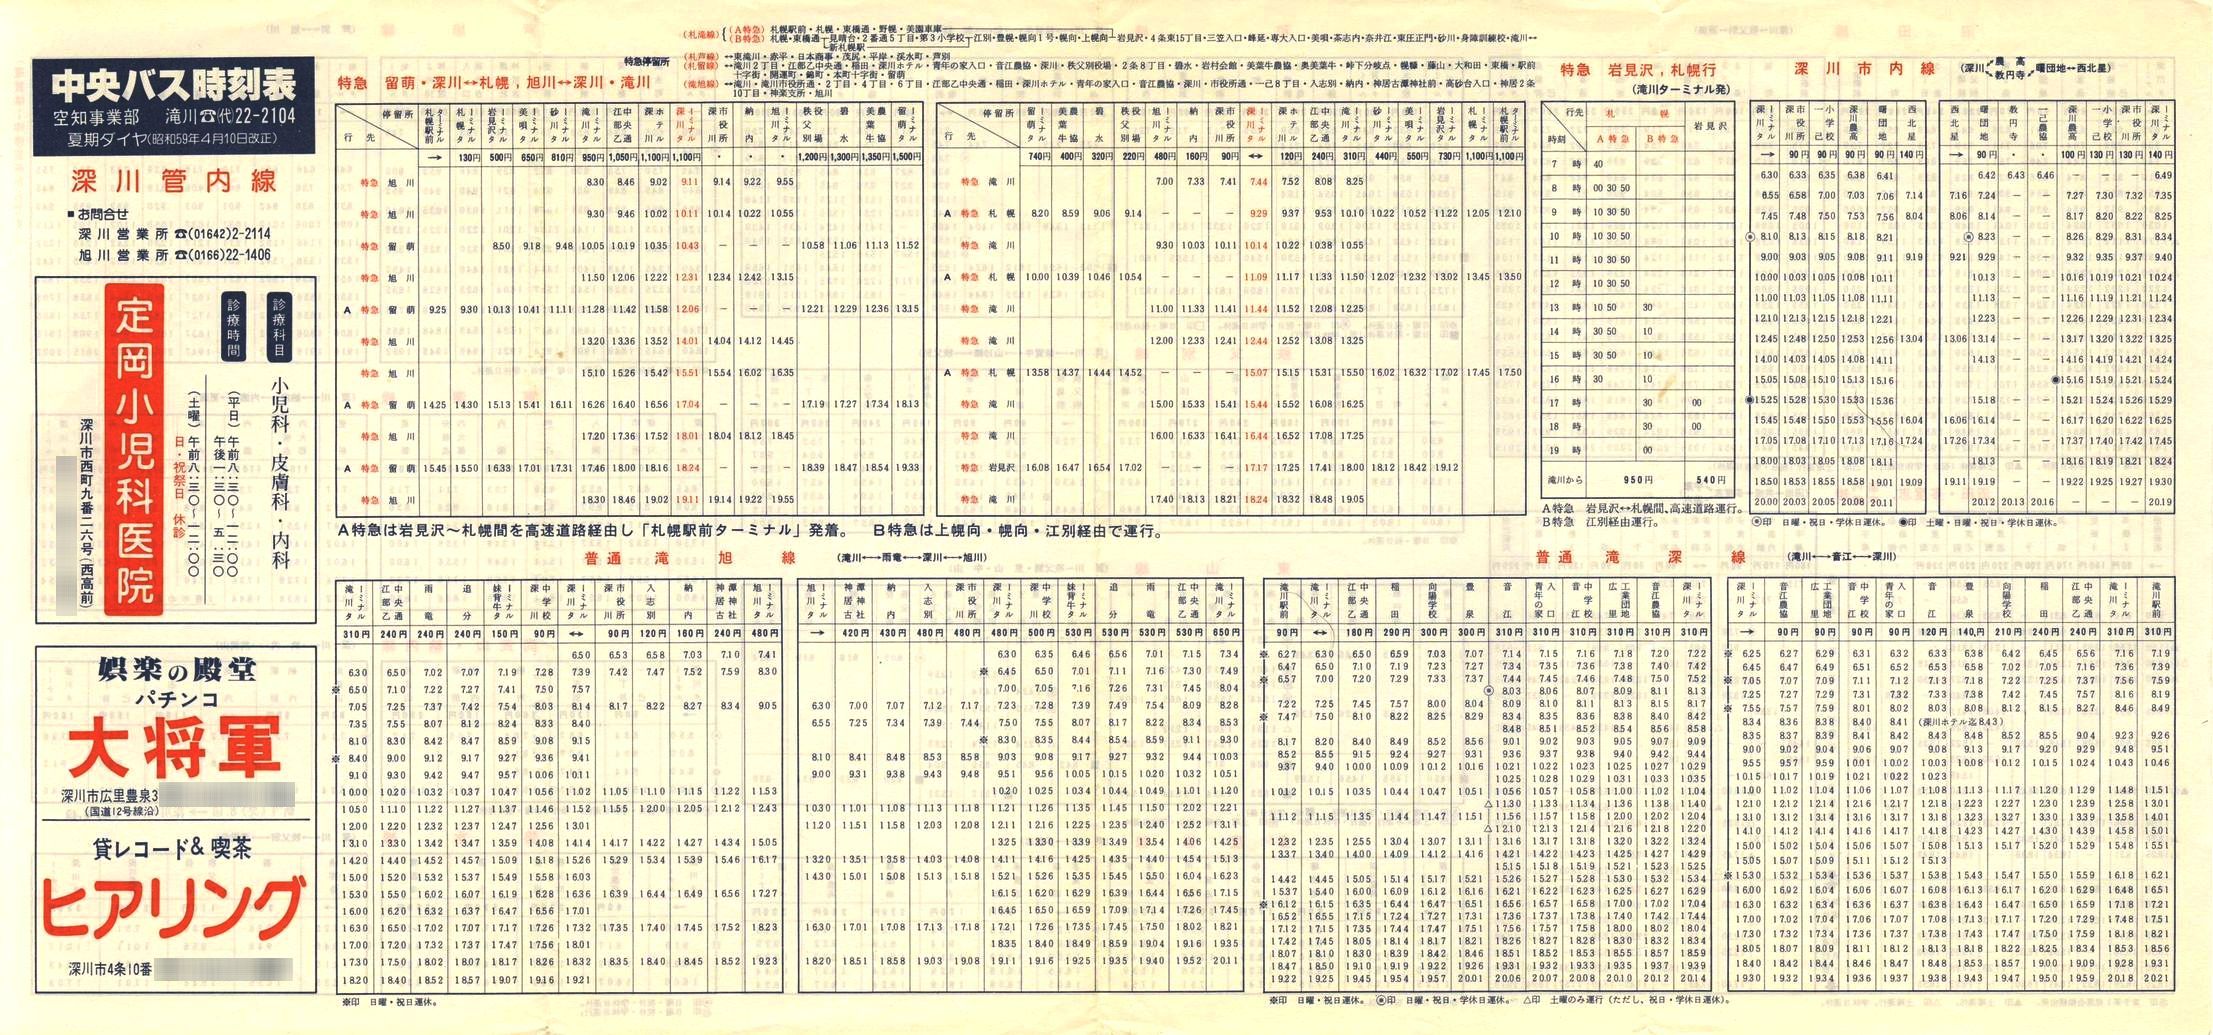 1984-04-10改正_北海道中央バス(空知)_深川管内線時刻表表面